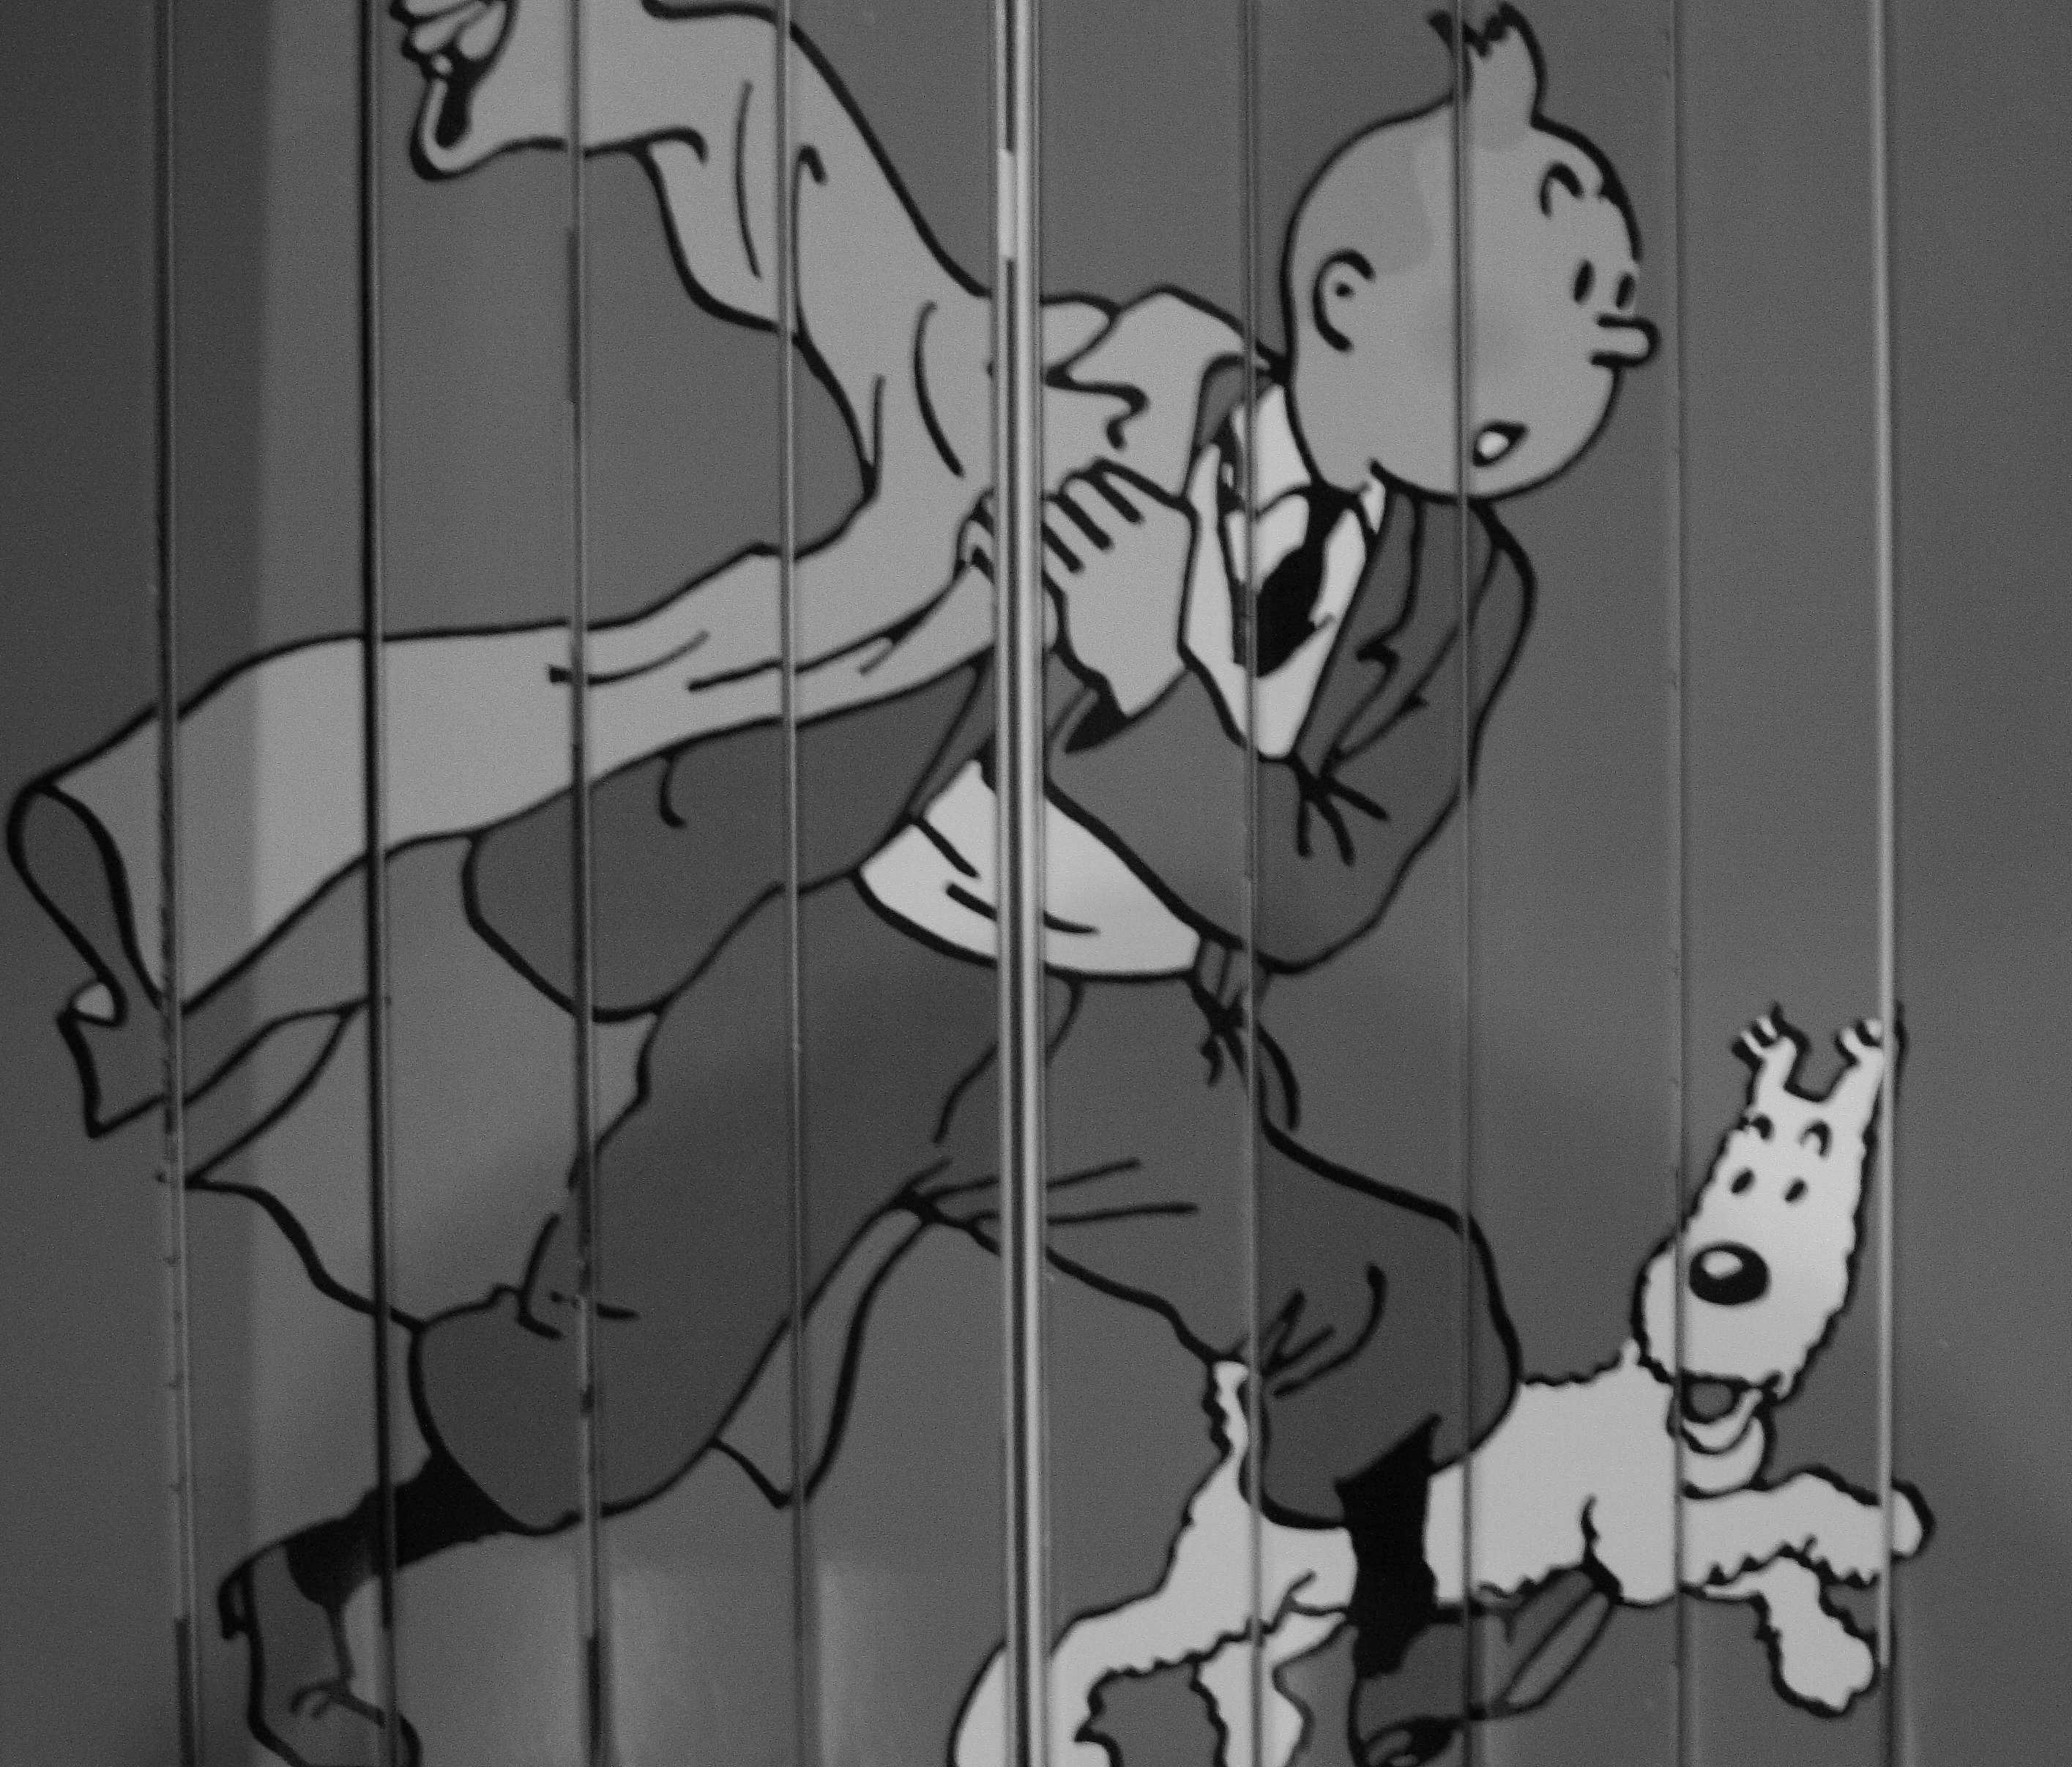 El primer còmic de Tintín sortirà en color 90 anys després